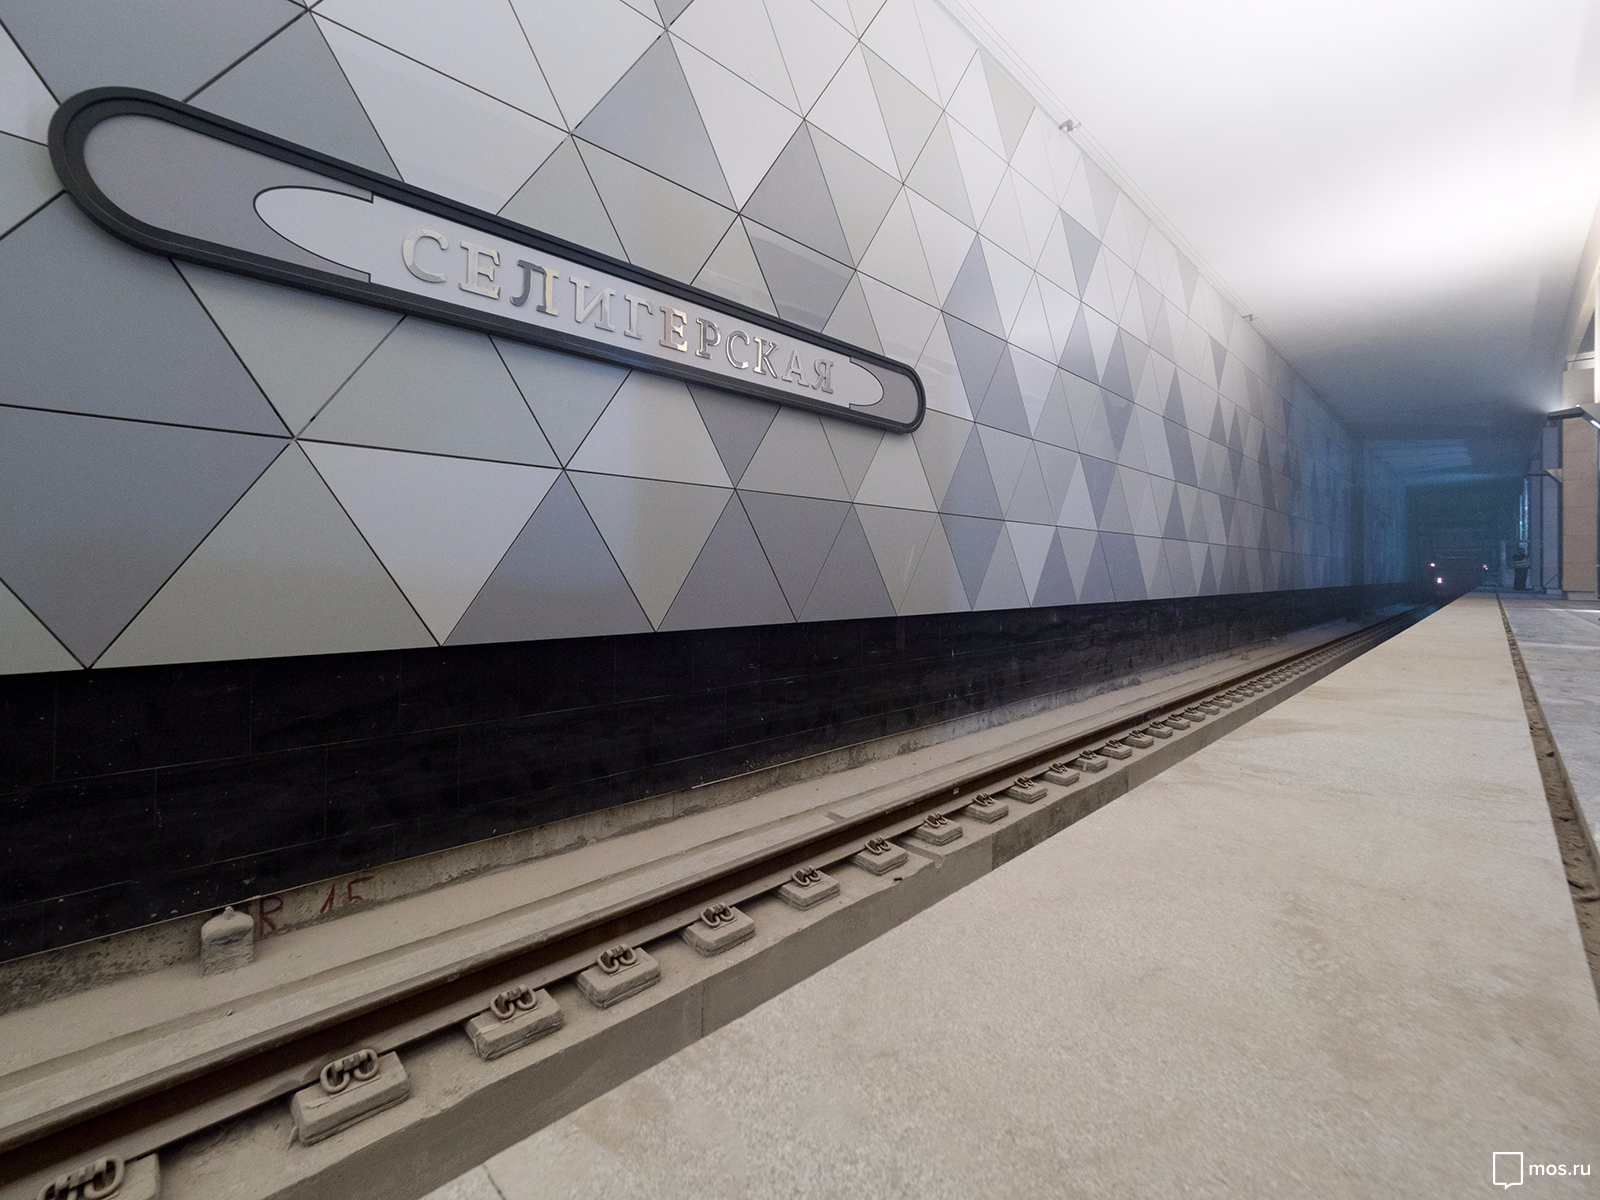 Станцию метро "Селигерская" откроют для пассажиров в марте 2018 года